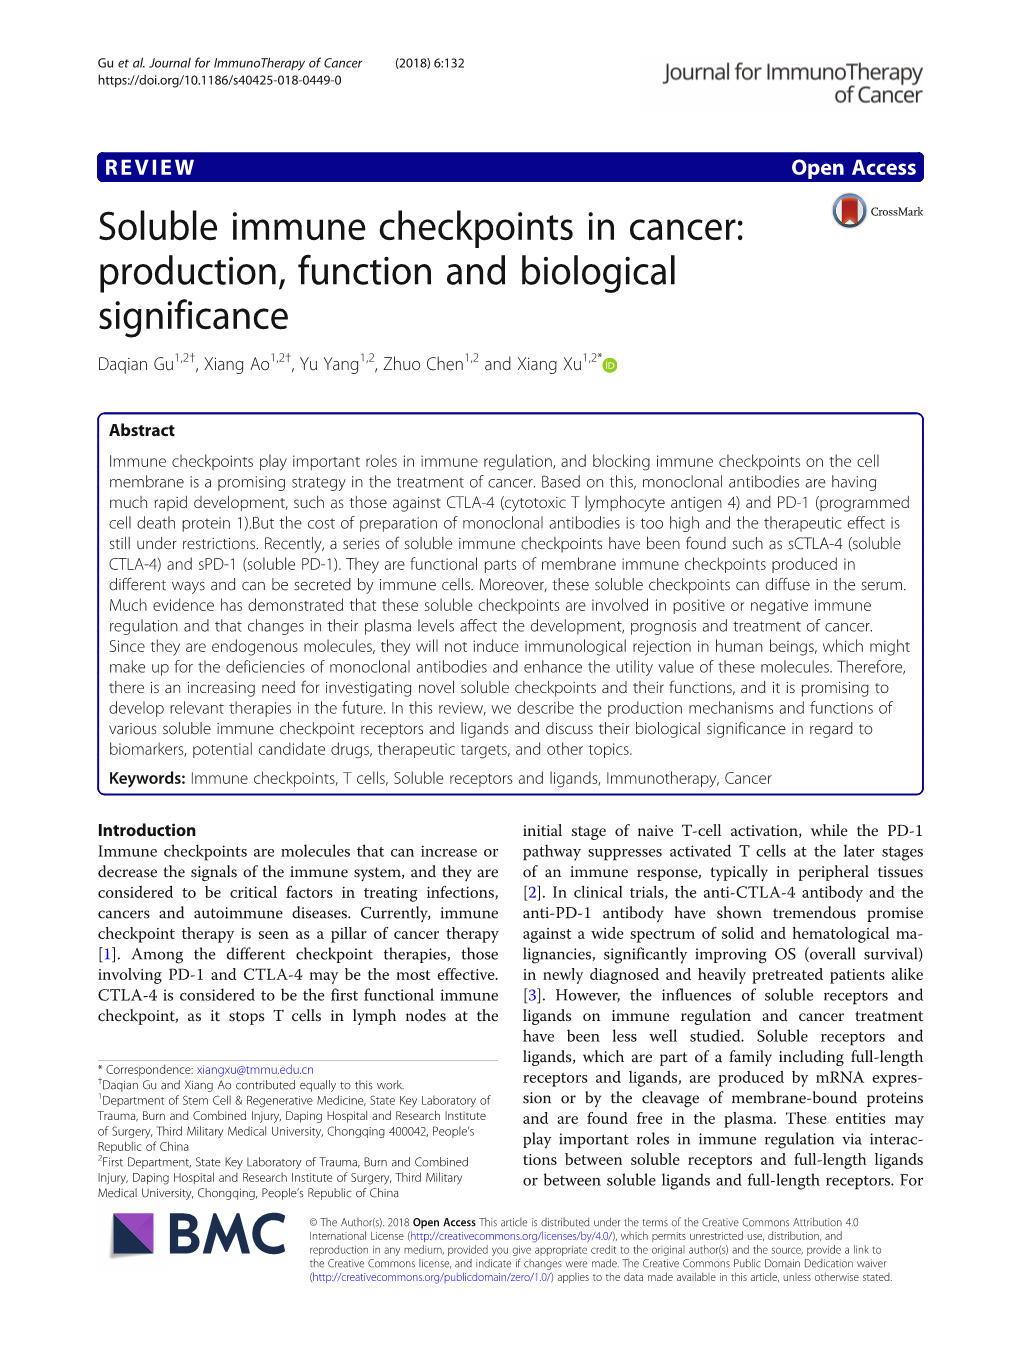 Soluble Immune Checkpoints in Cancer: Production, Function and Biological Significance Daqian Gu1,2†, Xiang Ao1,2†, Yu Yang1,2, Zhuo Chen1,2 and Xiang Xu1,2*